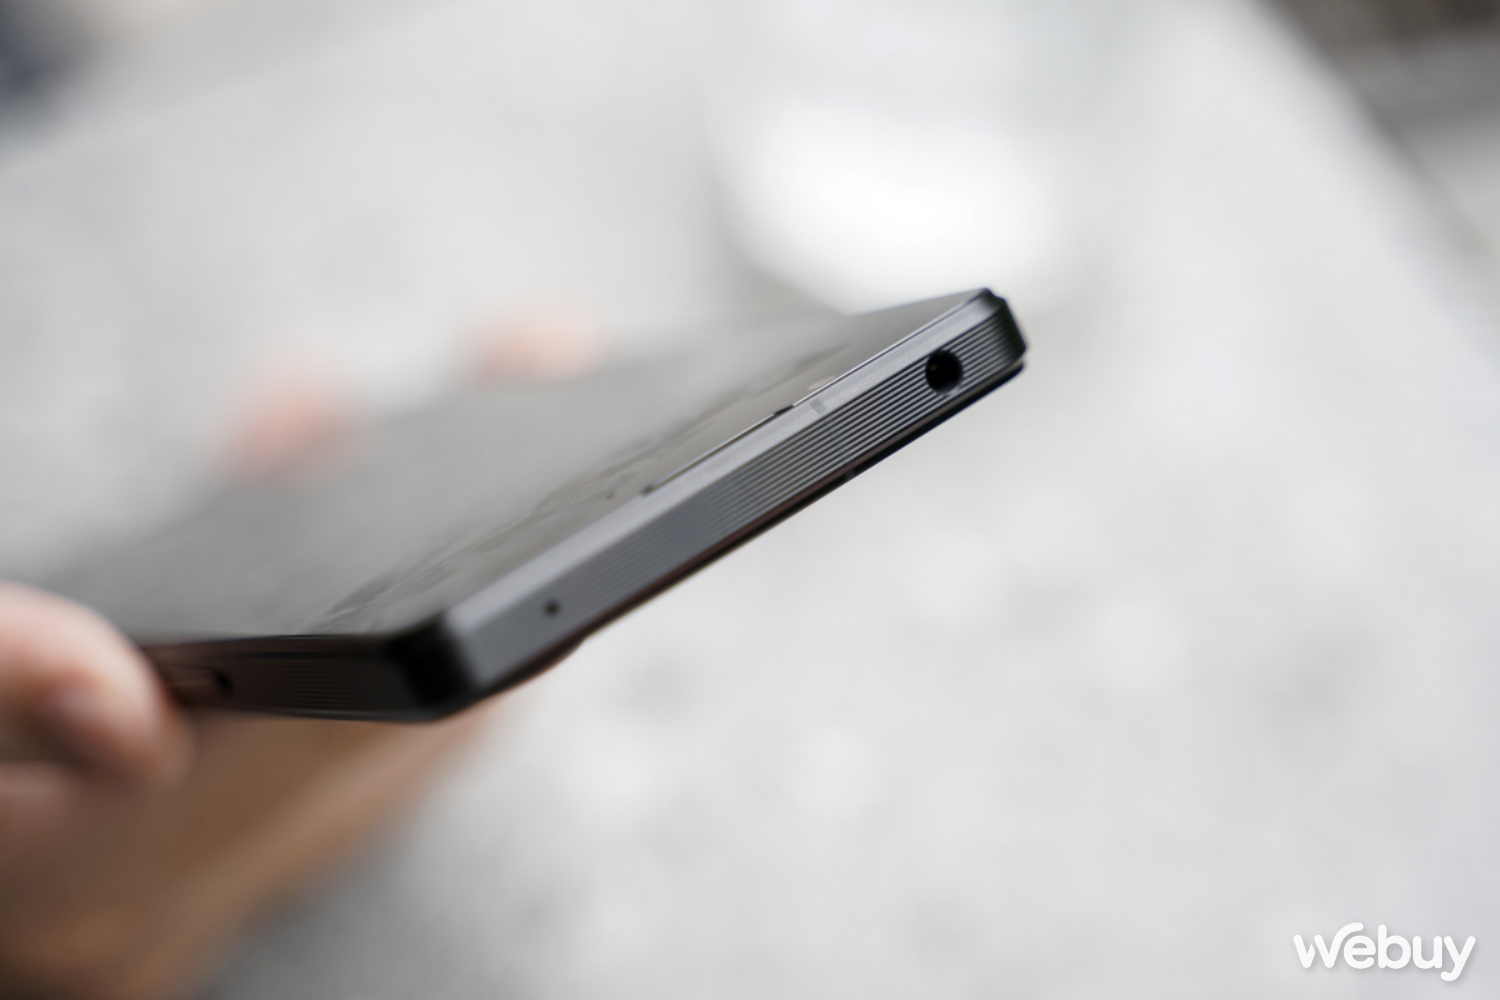 Fan Sony nói về Xperia 1 V sau 5 năm “xa cách”: Tính năng “Pro” hơn cả Pro, chụp ảnh đã hết “xấu” - Ảnh 4.